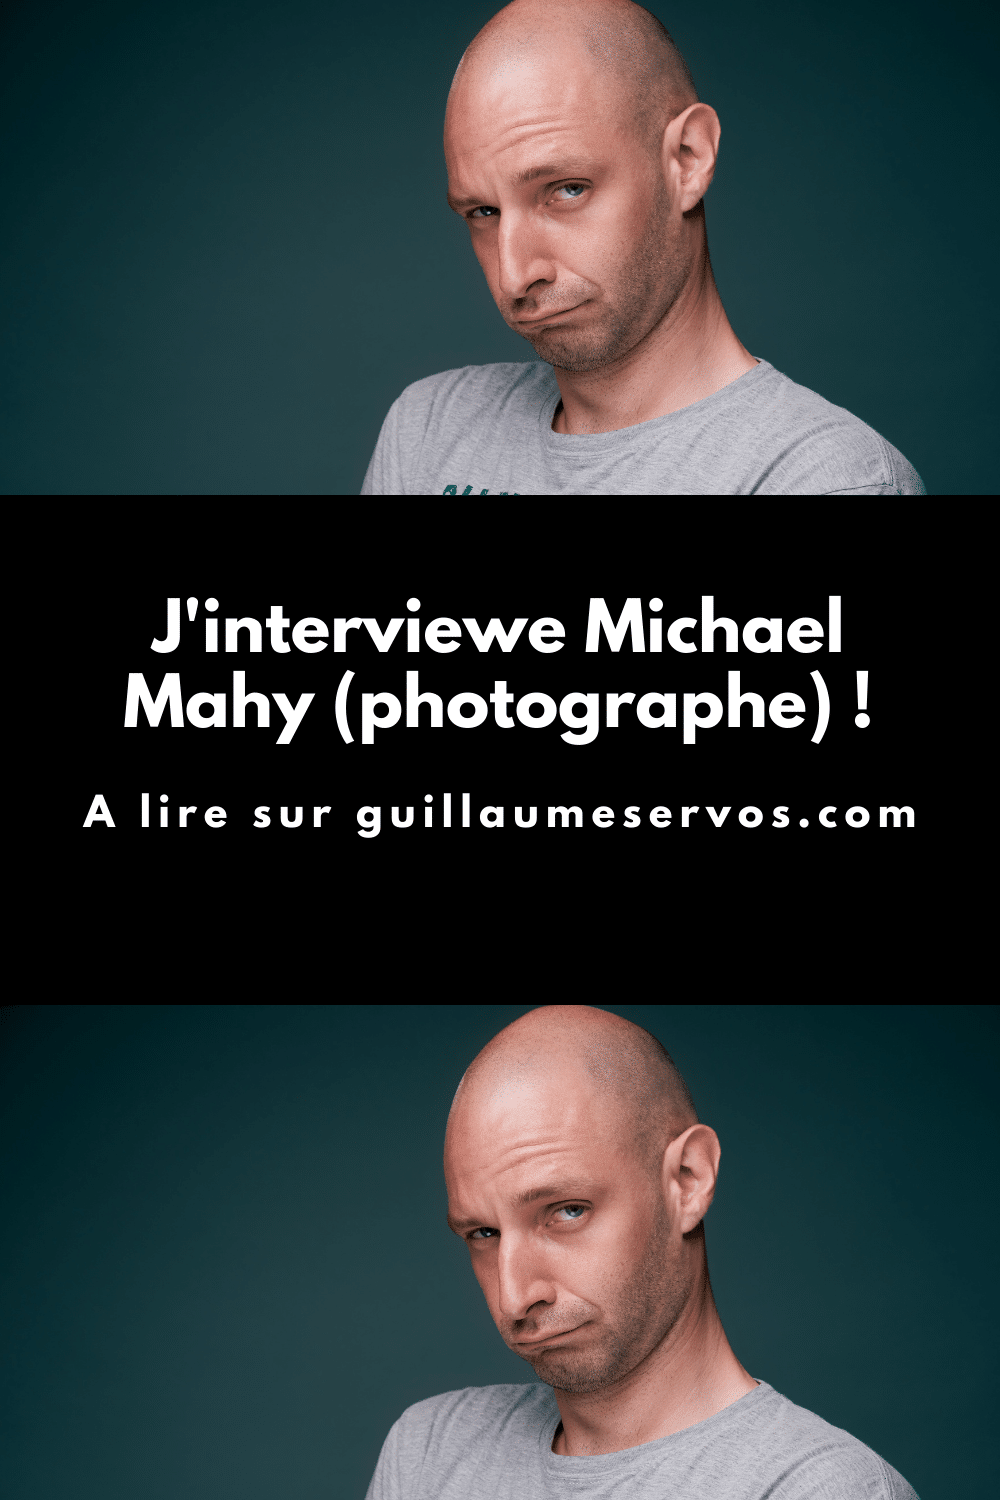 Découvre mon interview avec Michael Mahy, photographe amateur. Son rapport à la photographie, aux réseaux sociaux et au voyage.